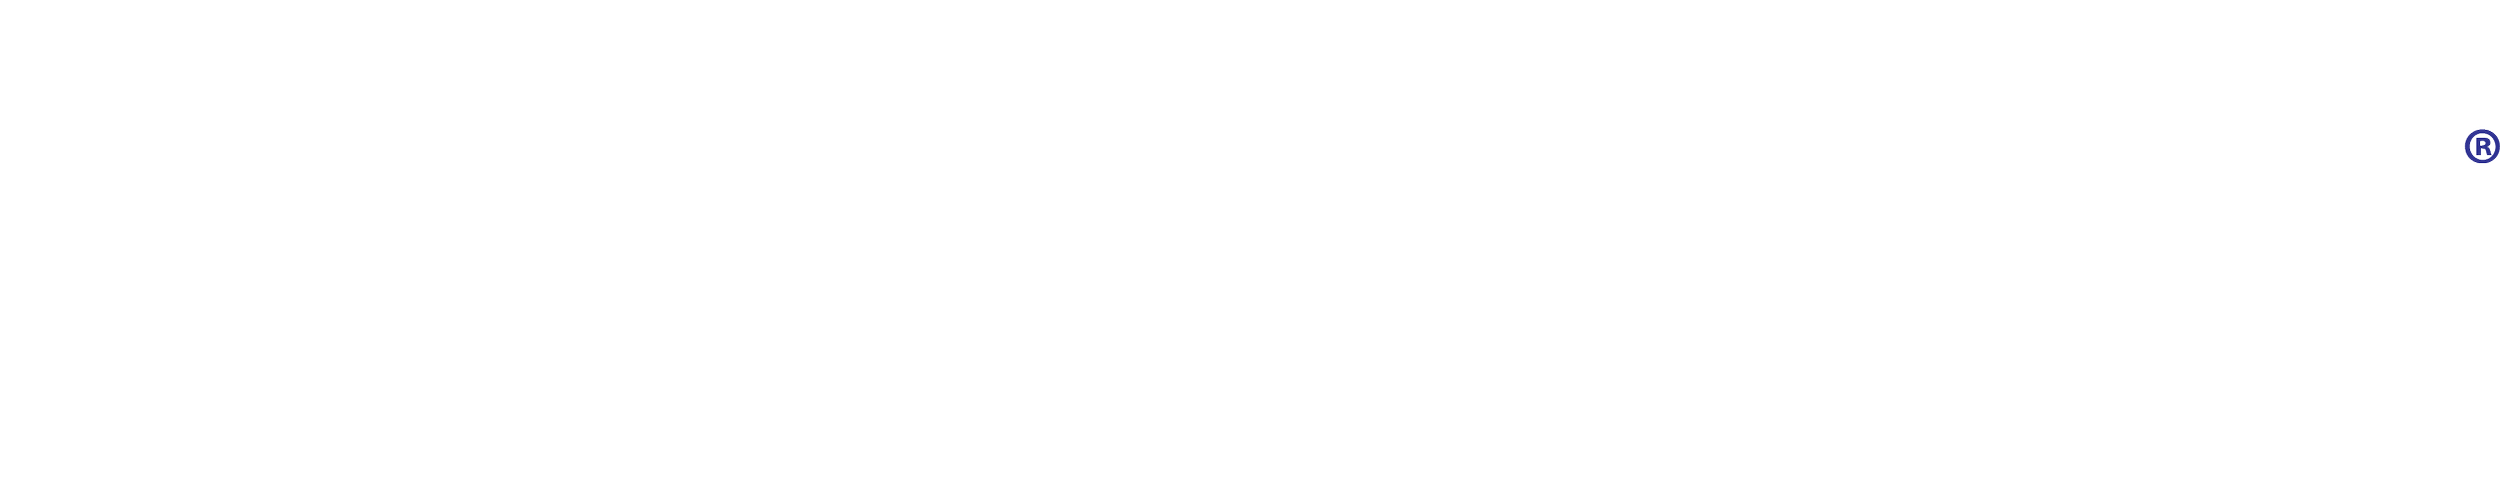 acadia-logo1.png